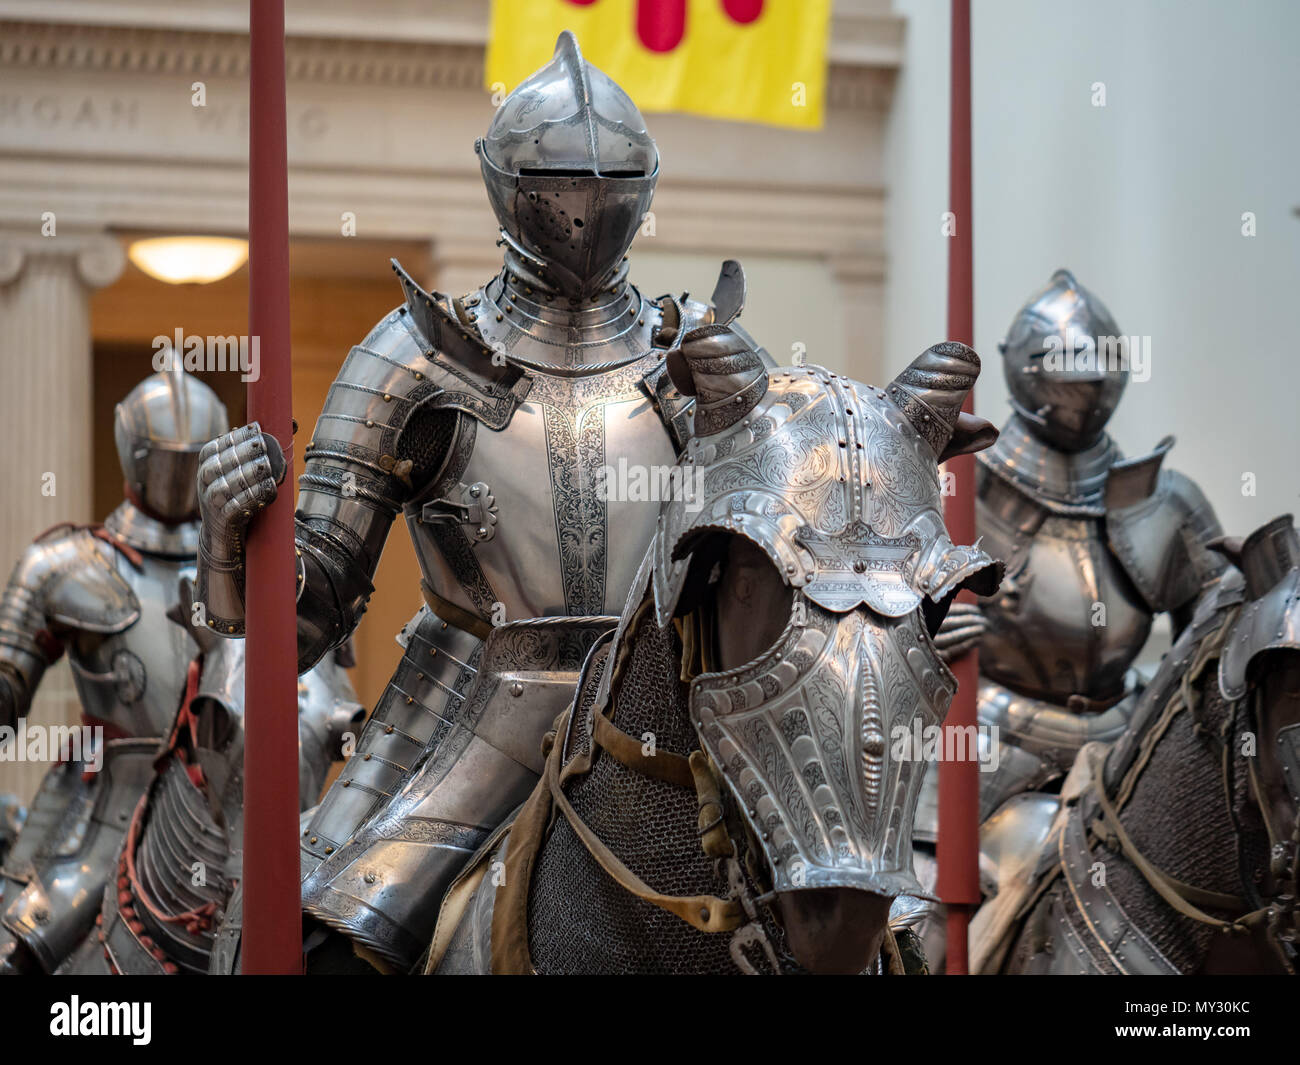 Un groupe de chevaliers du 16ème siècle portant une armure de plaque allemande autour de l'heure de début de la Renaissance. Tous apparaissent armés de lances Banque D'Images